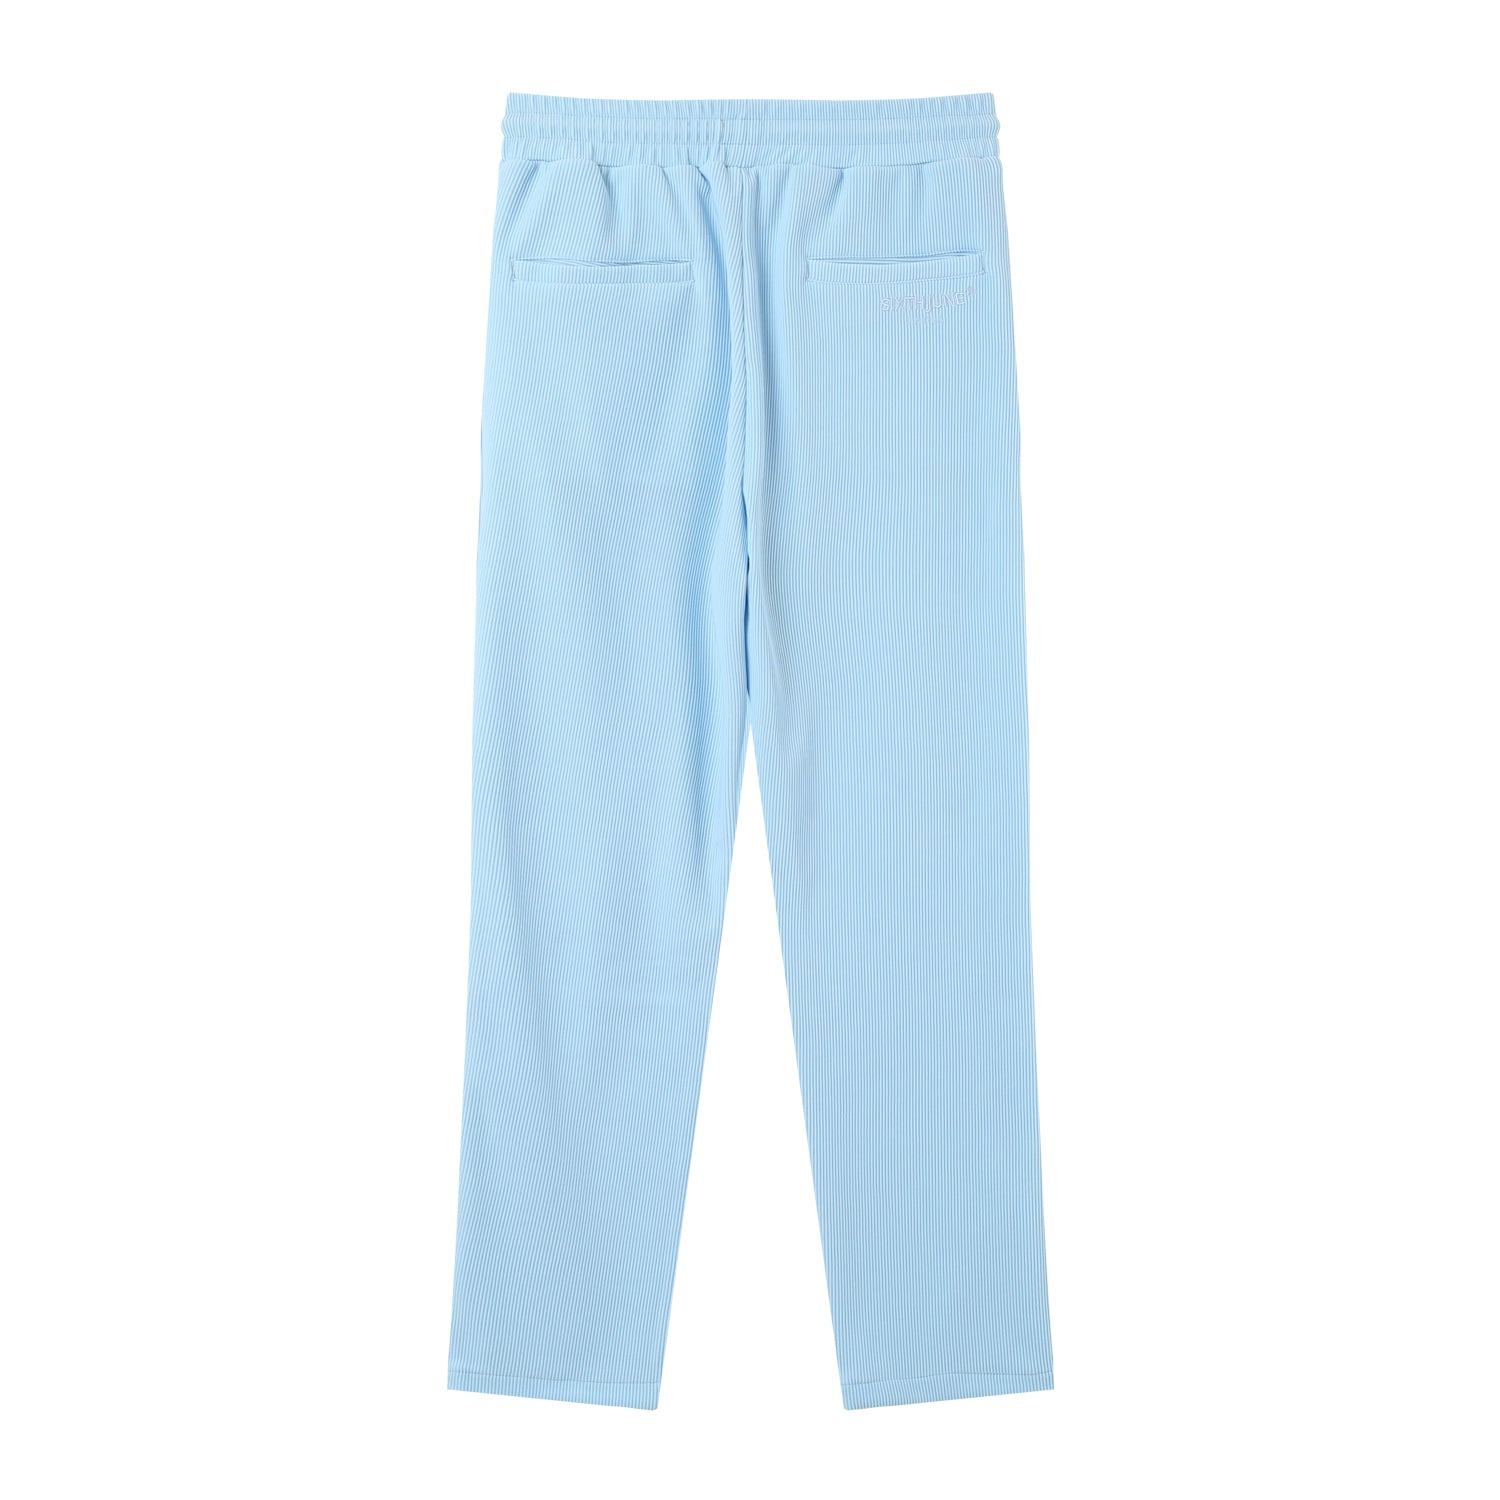 Pantalon fluide plissé Bleu clair